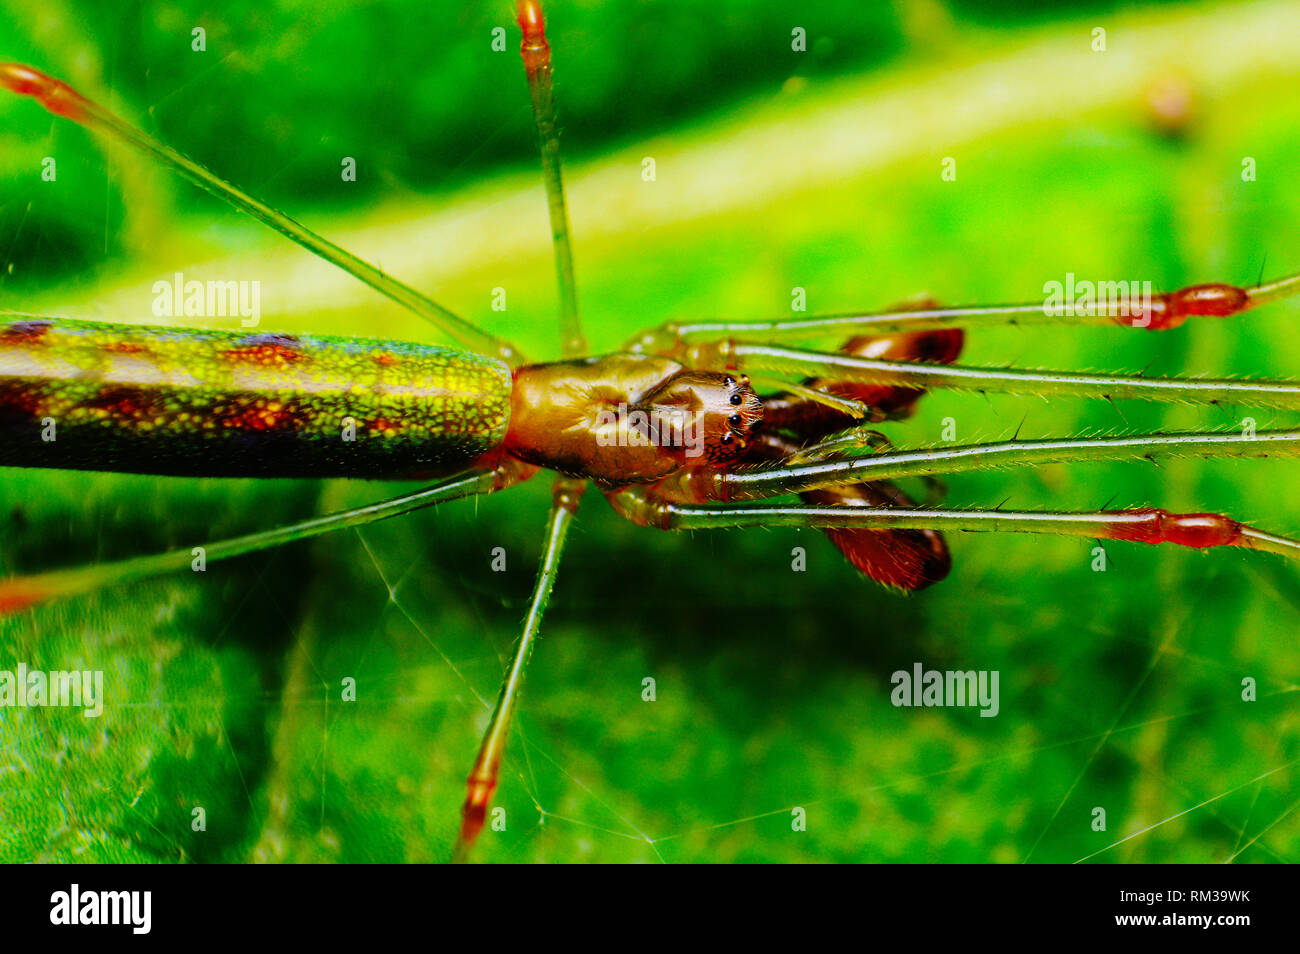 Closeup of Long Jawed spider - Tetragnatha guatemalensis, Satara, Maharashtra, India Stock Photo